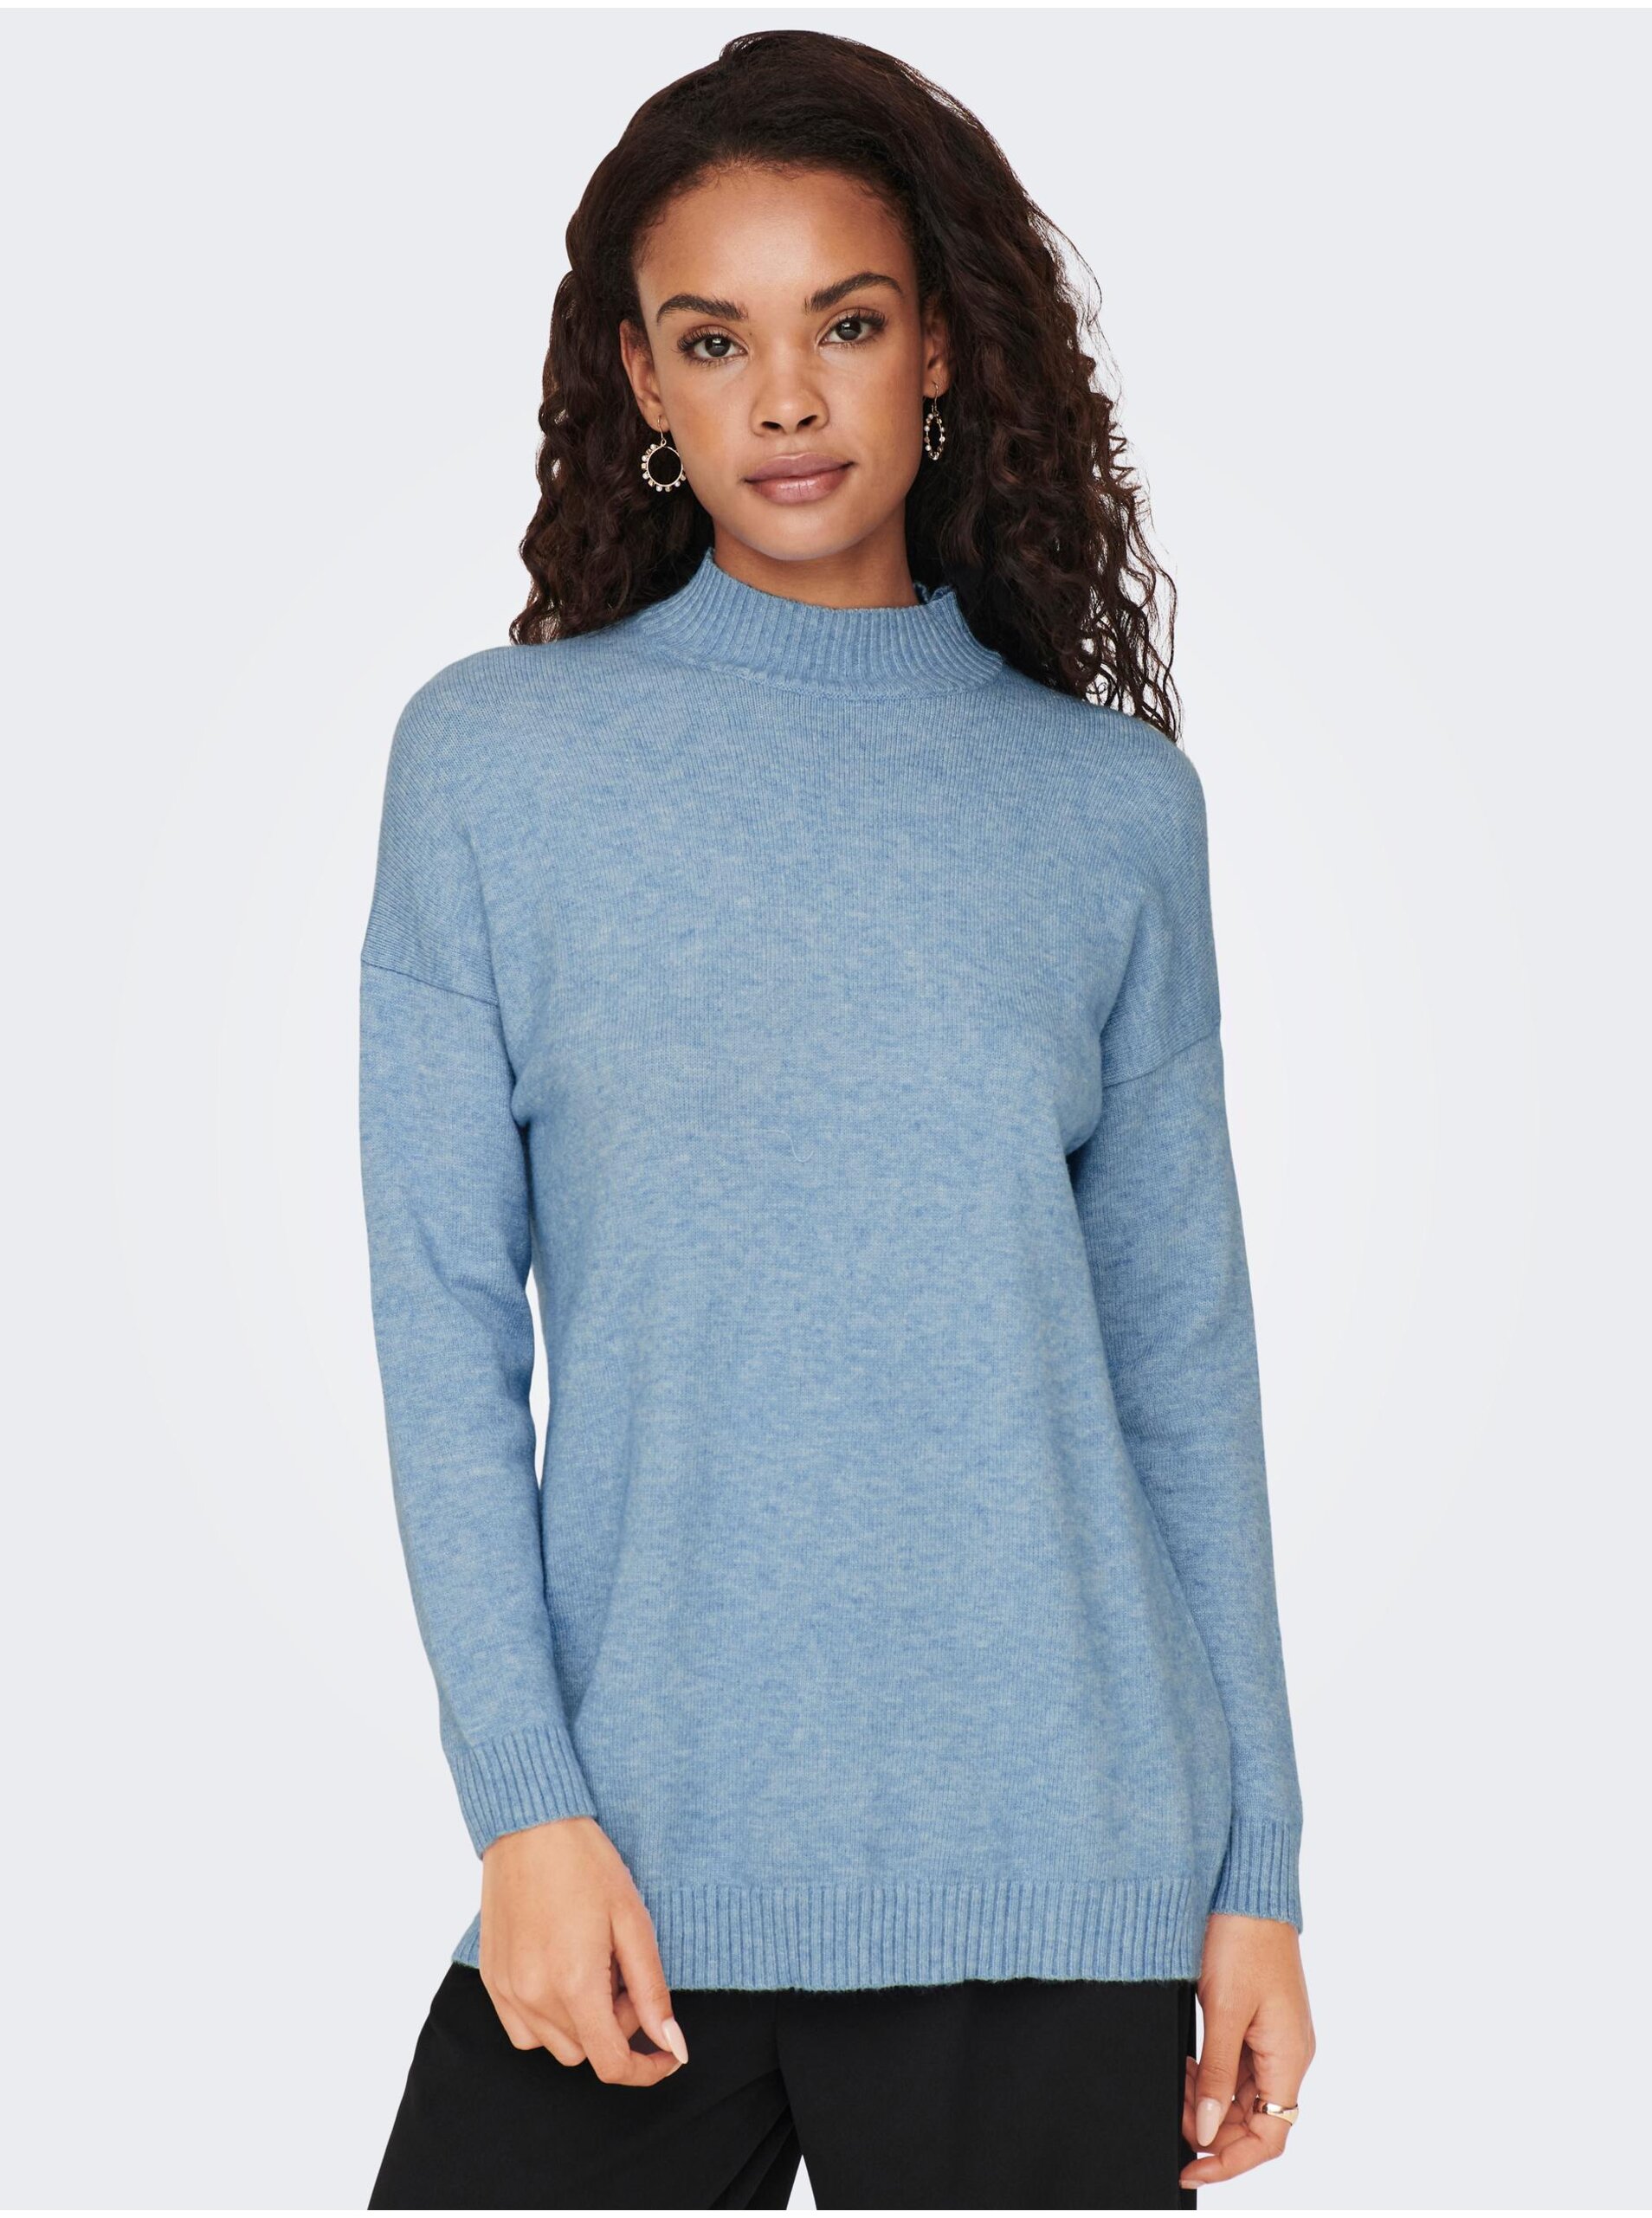 Lacno Modrý melírovaný sveter ONLY Lesly